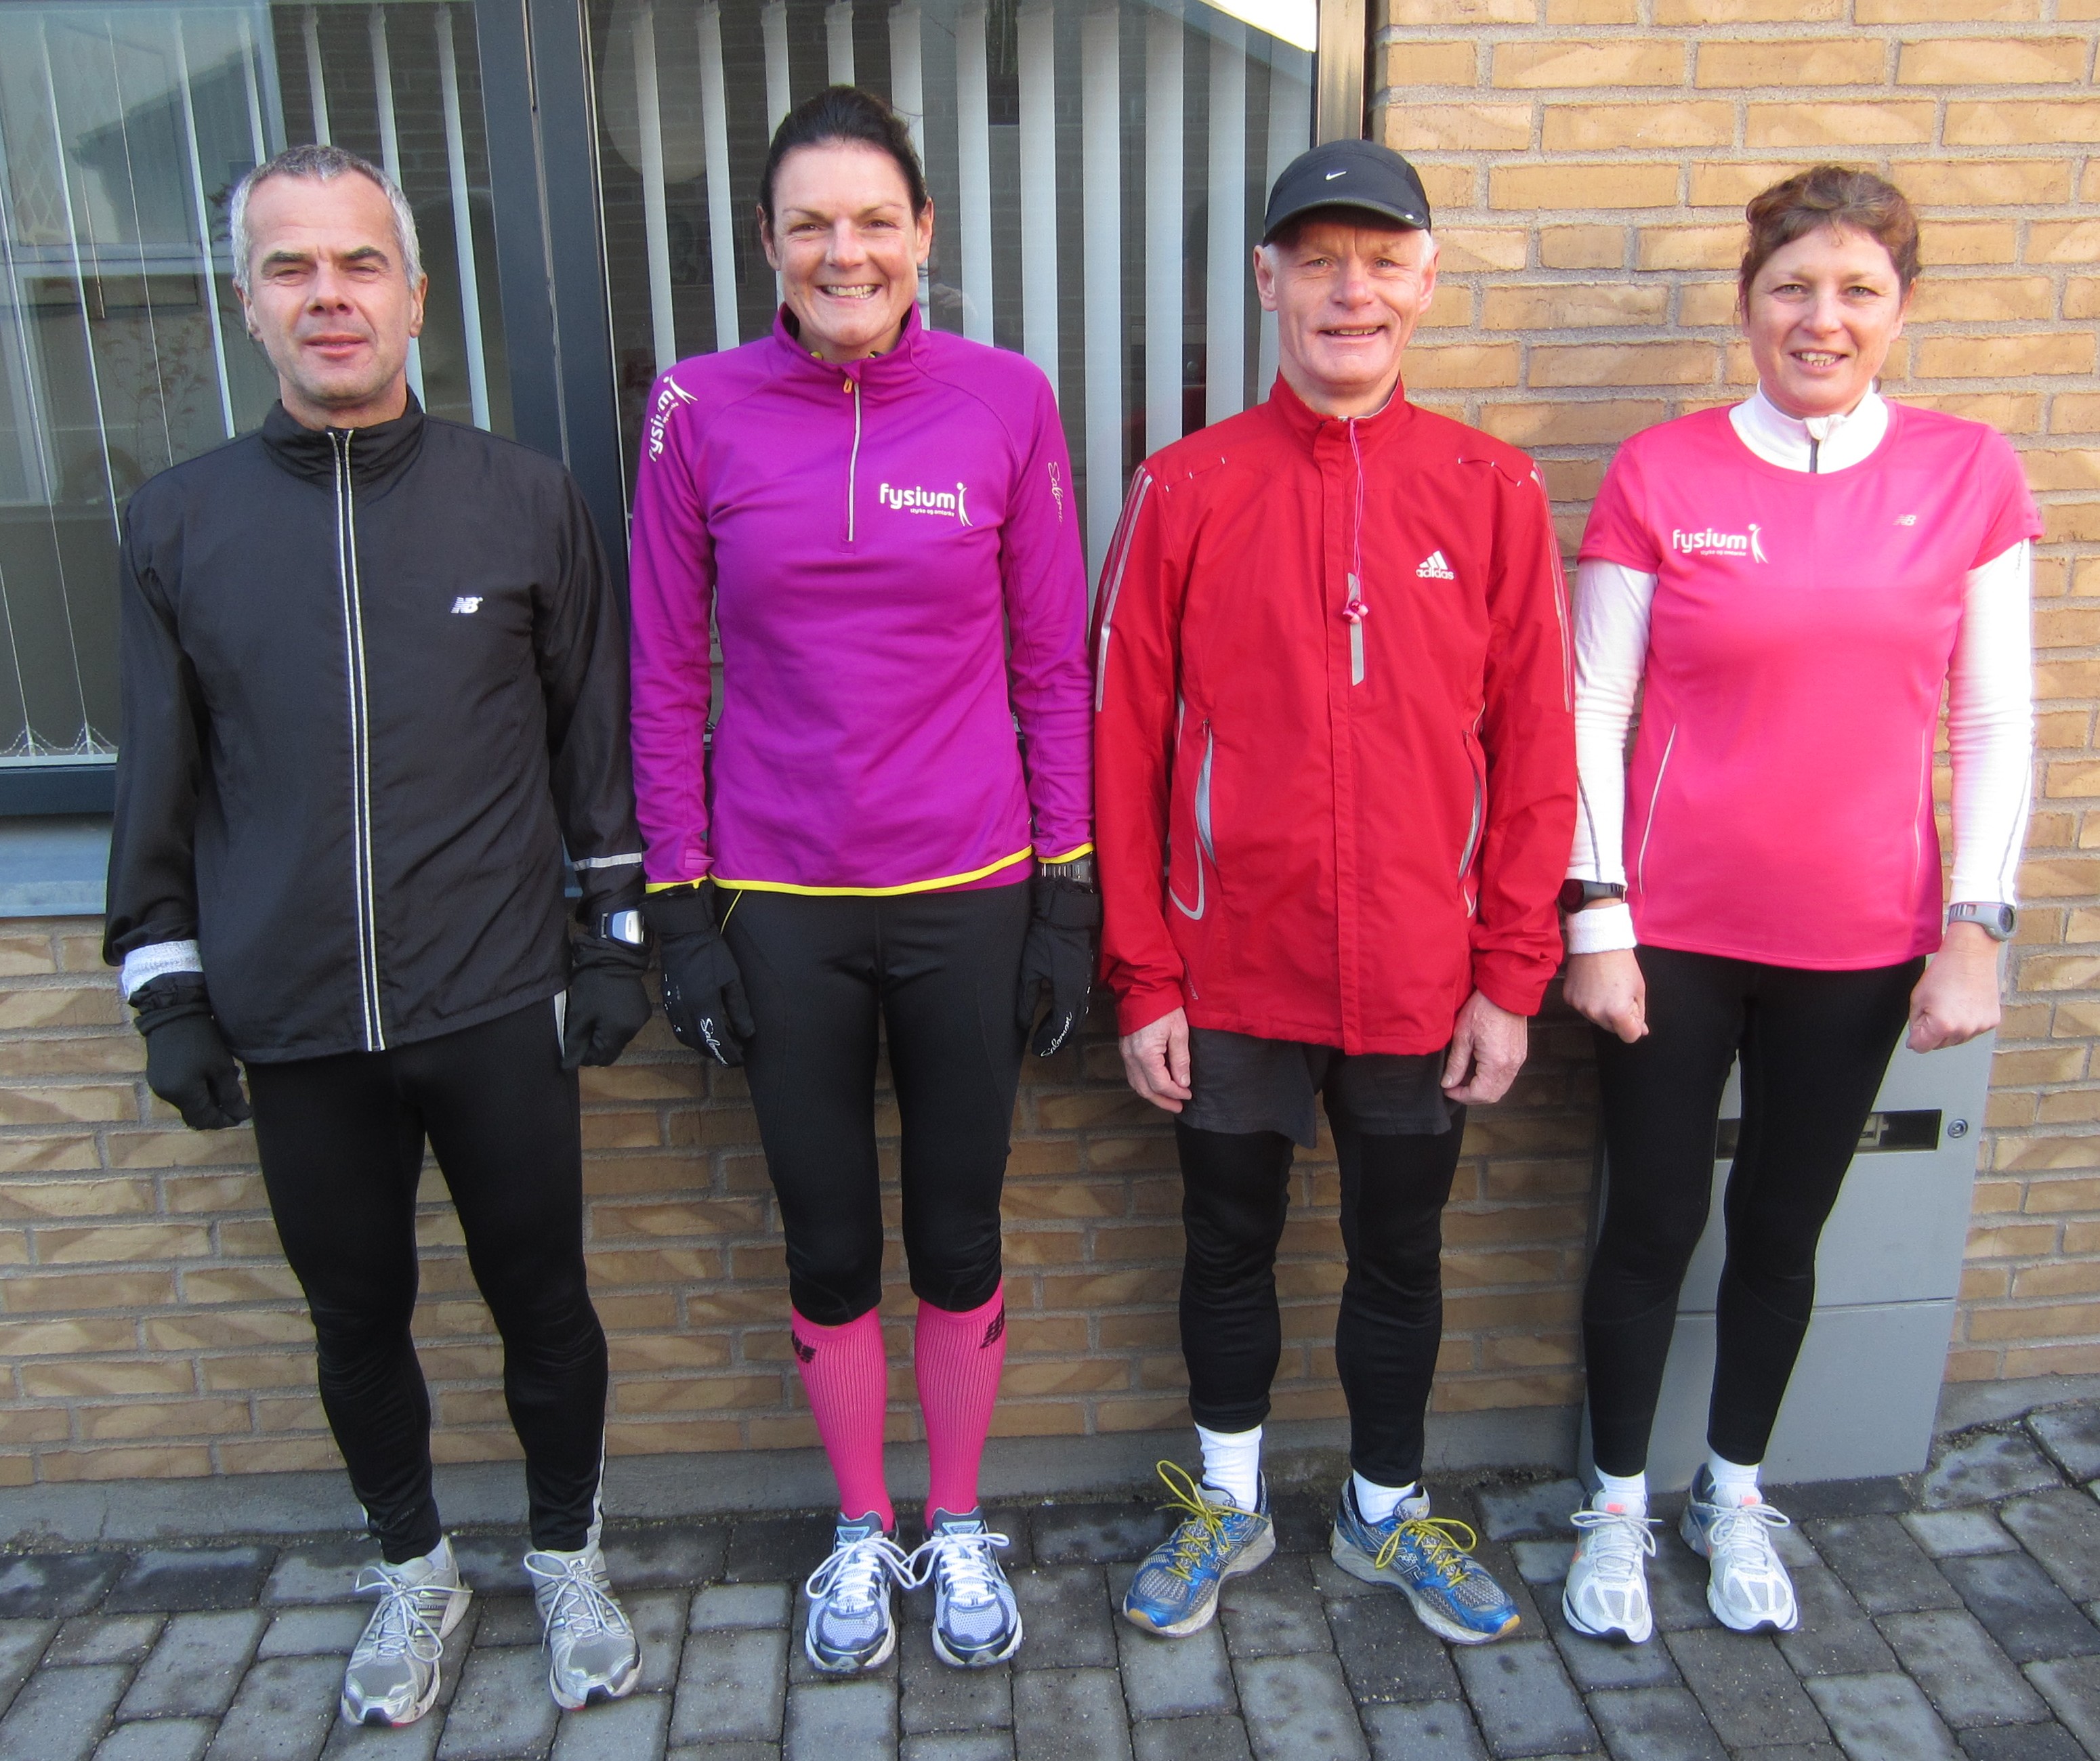 I dag var vi lige nok til et officielt marathon. Leif Skinnerup, Annette Fredskov, Preben Poulsen, Malene Jensen